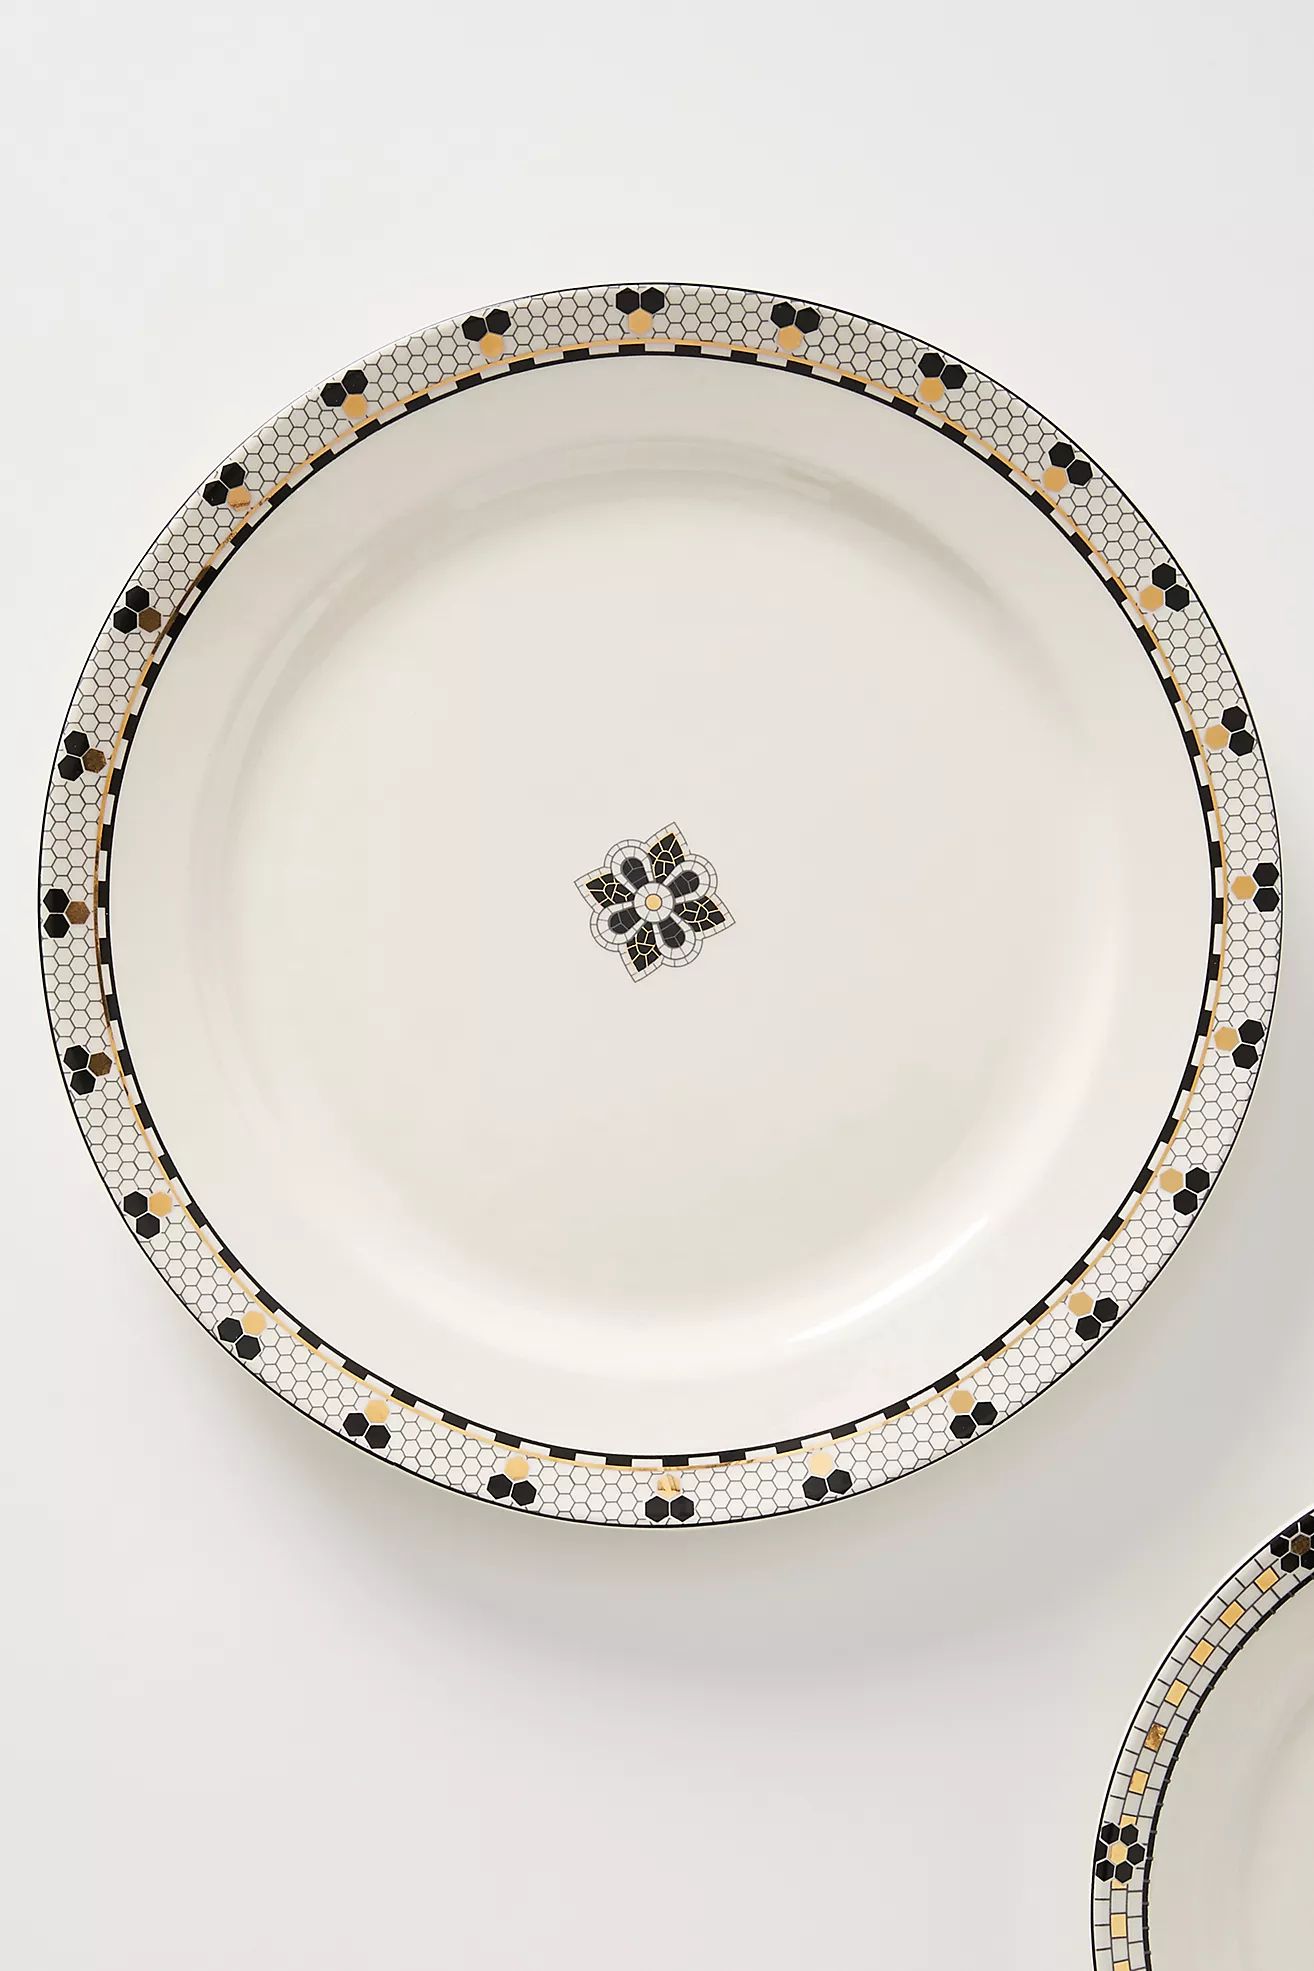 Bistro Tile Dinner Plates, Set of 4 | Anthropologie (US)